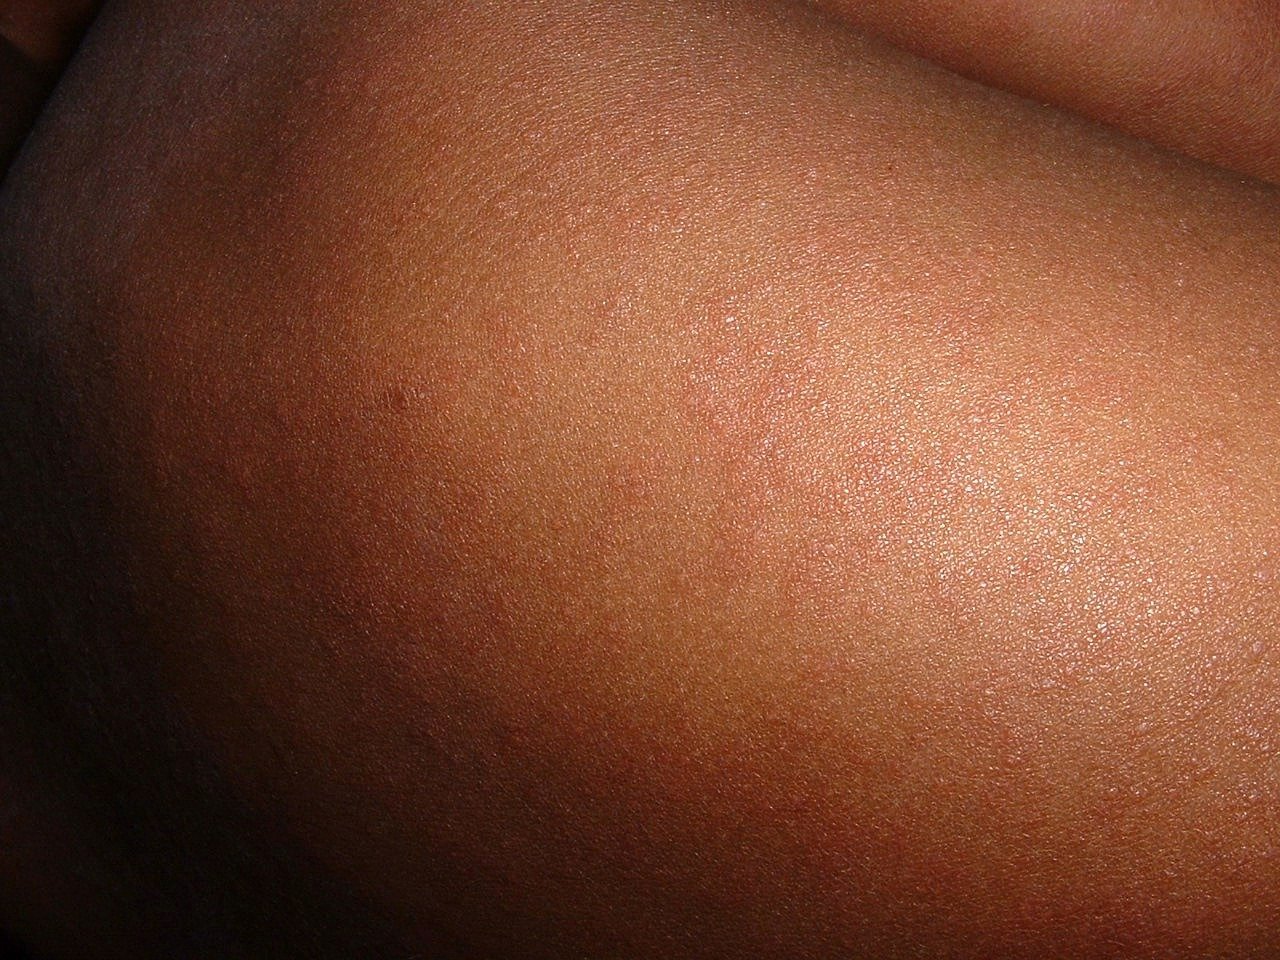 北投多家醫院爆麻疹是謠言  轉發恐重罰50萬